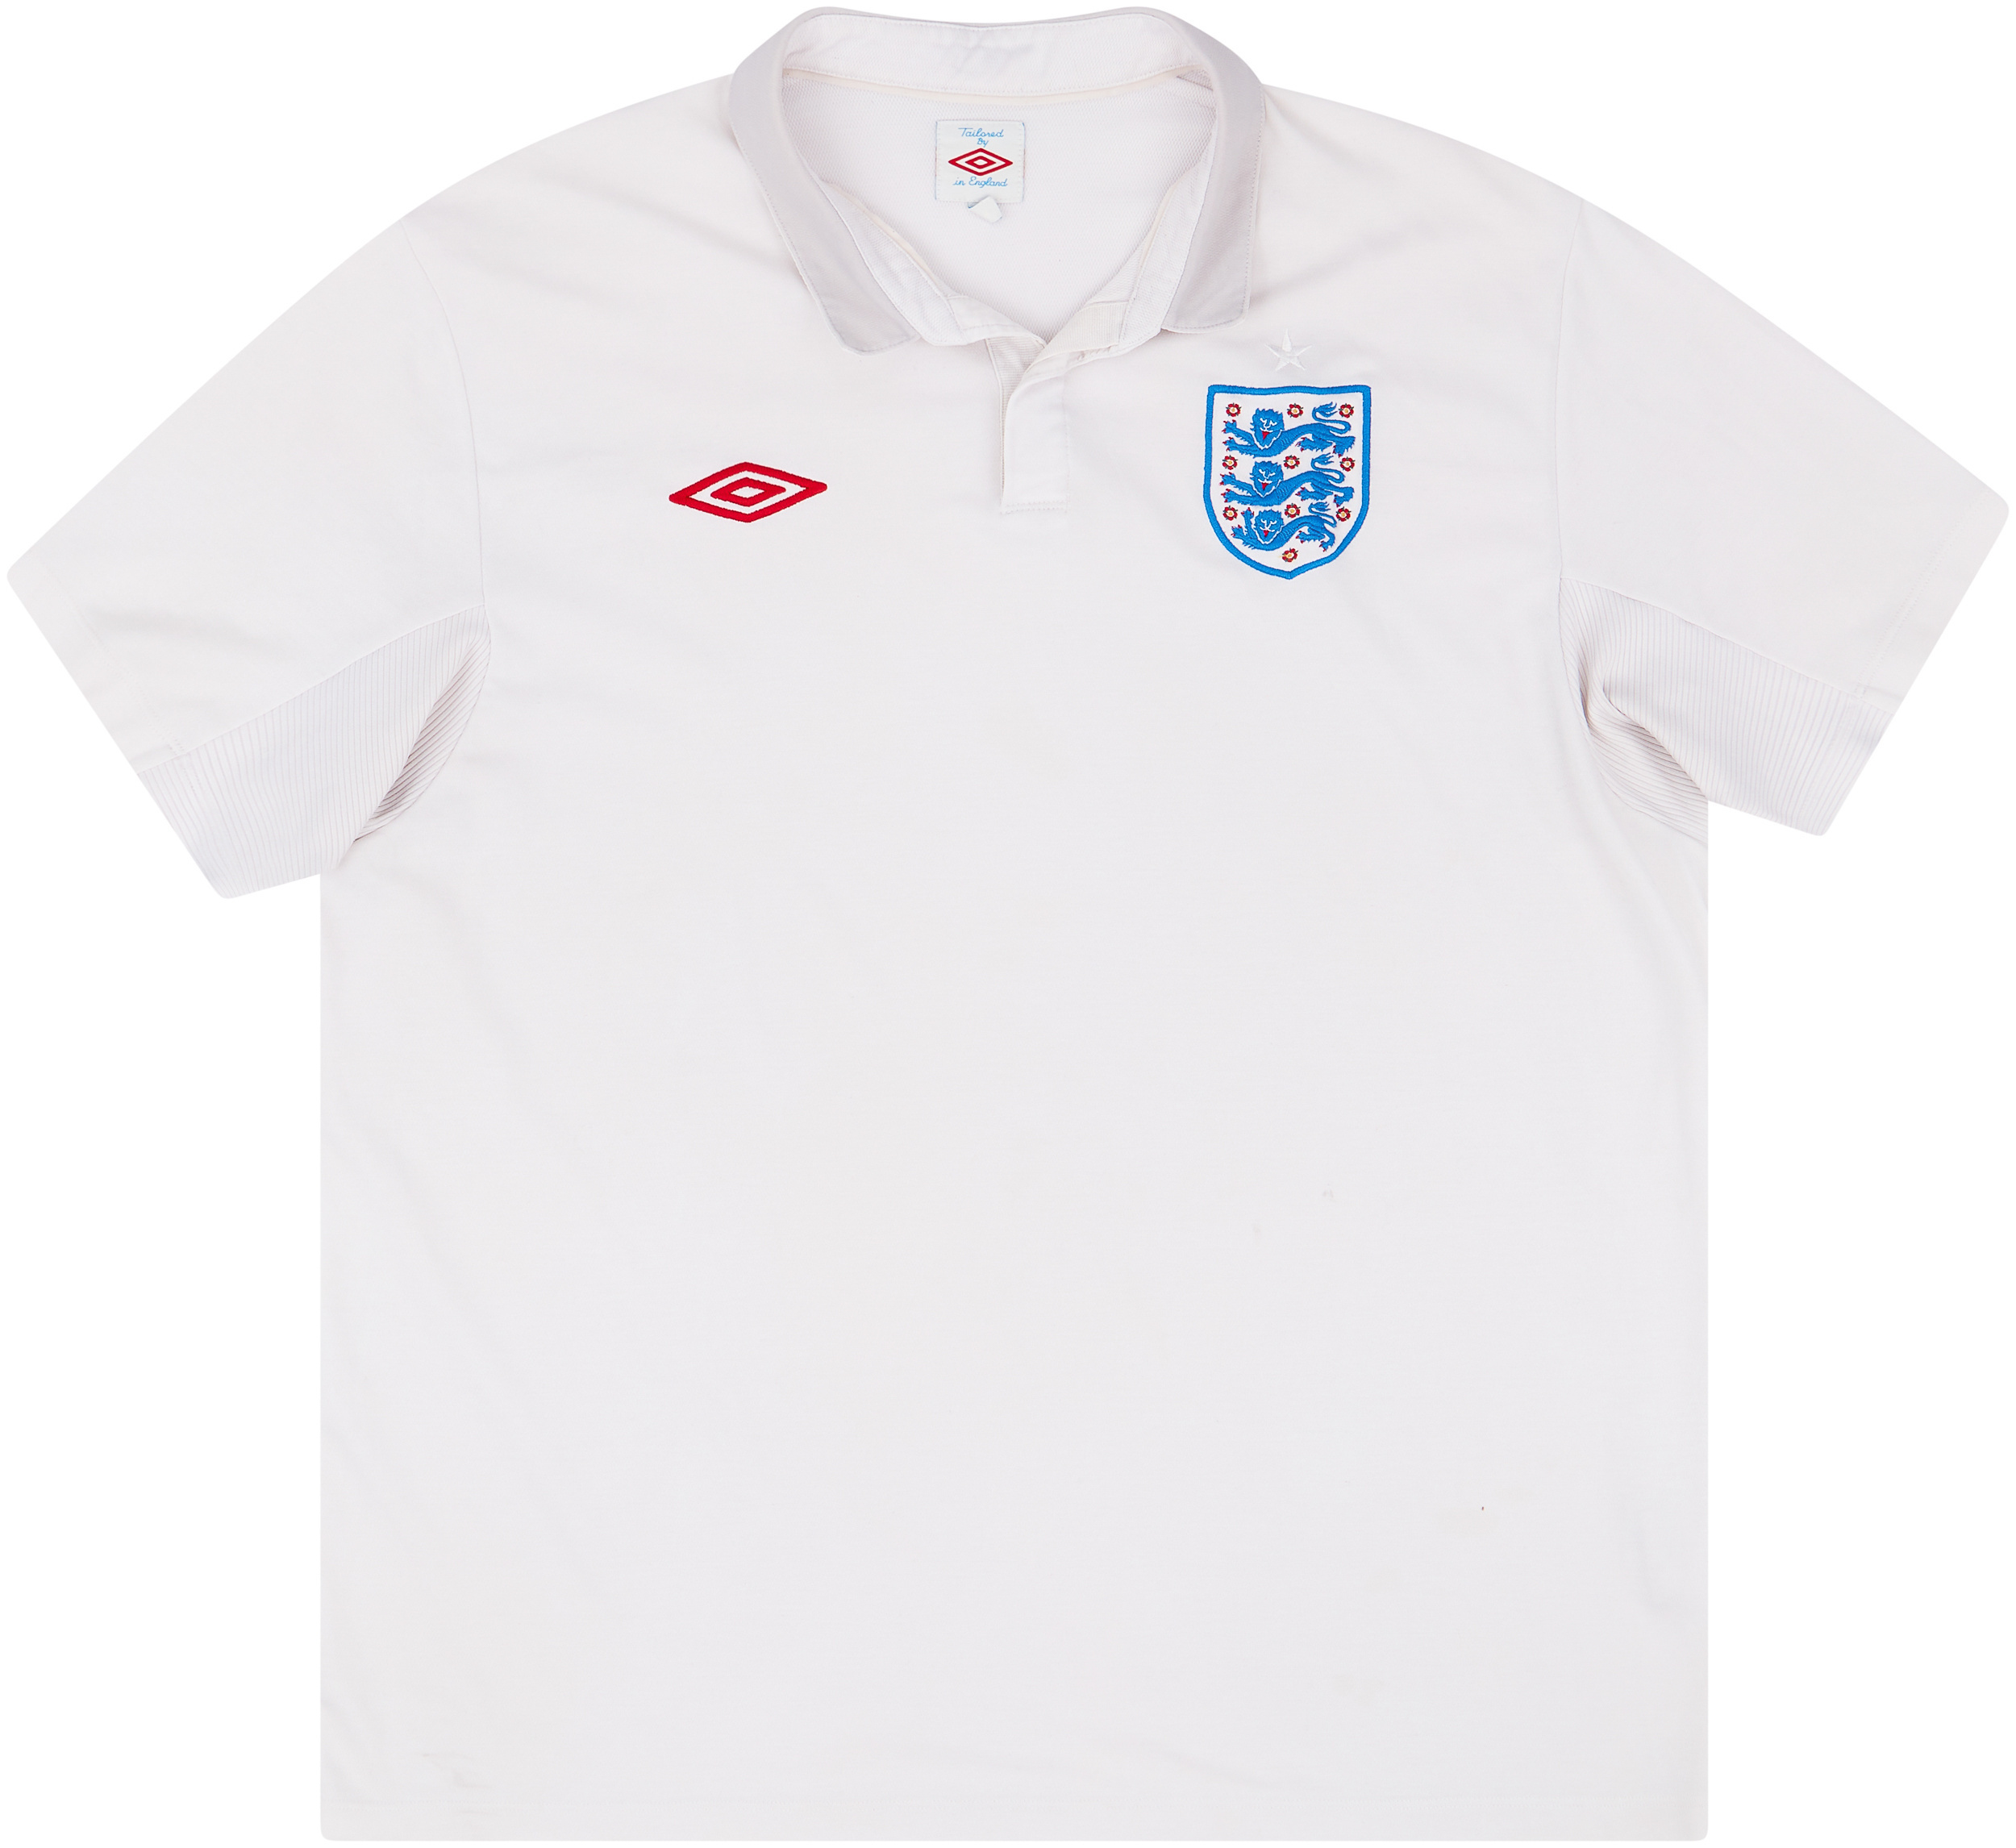 2009-10 England Home Shirt - 5/10 - ()